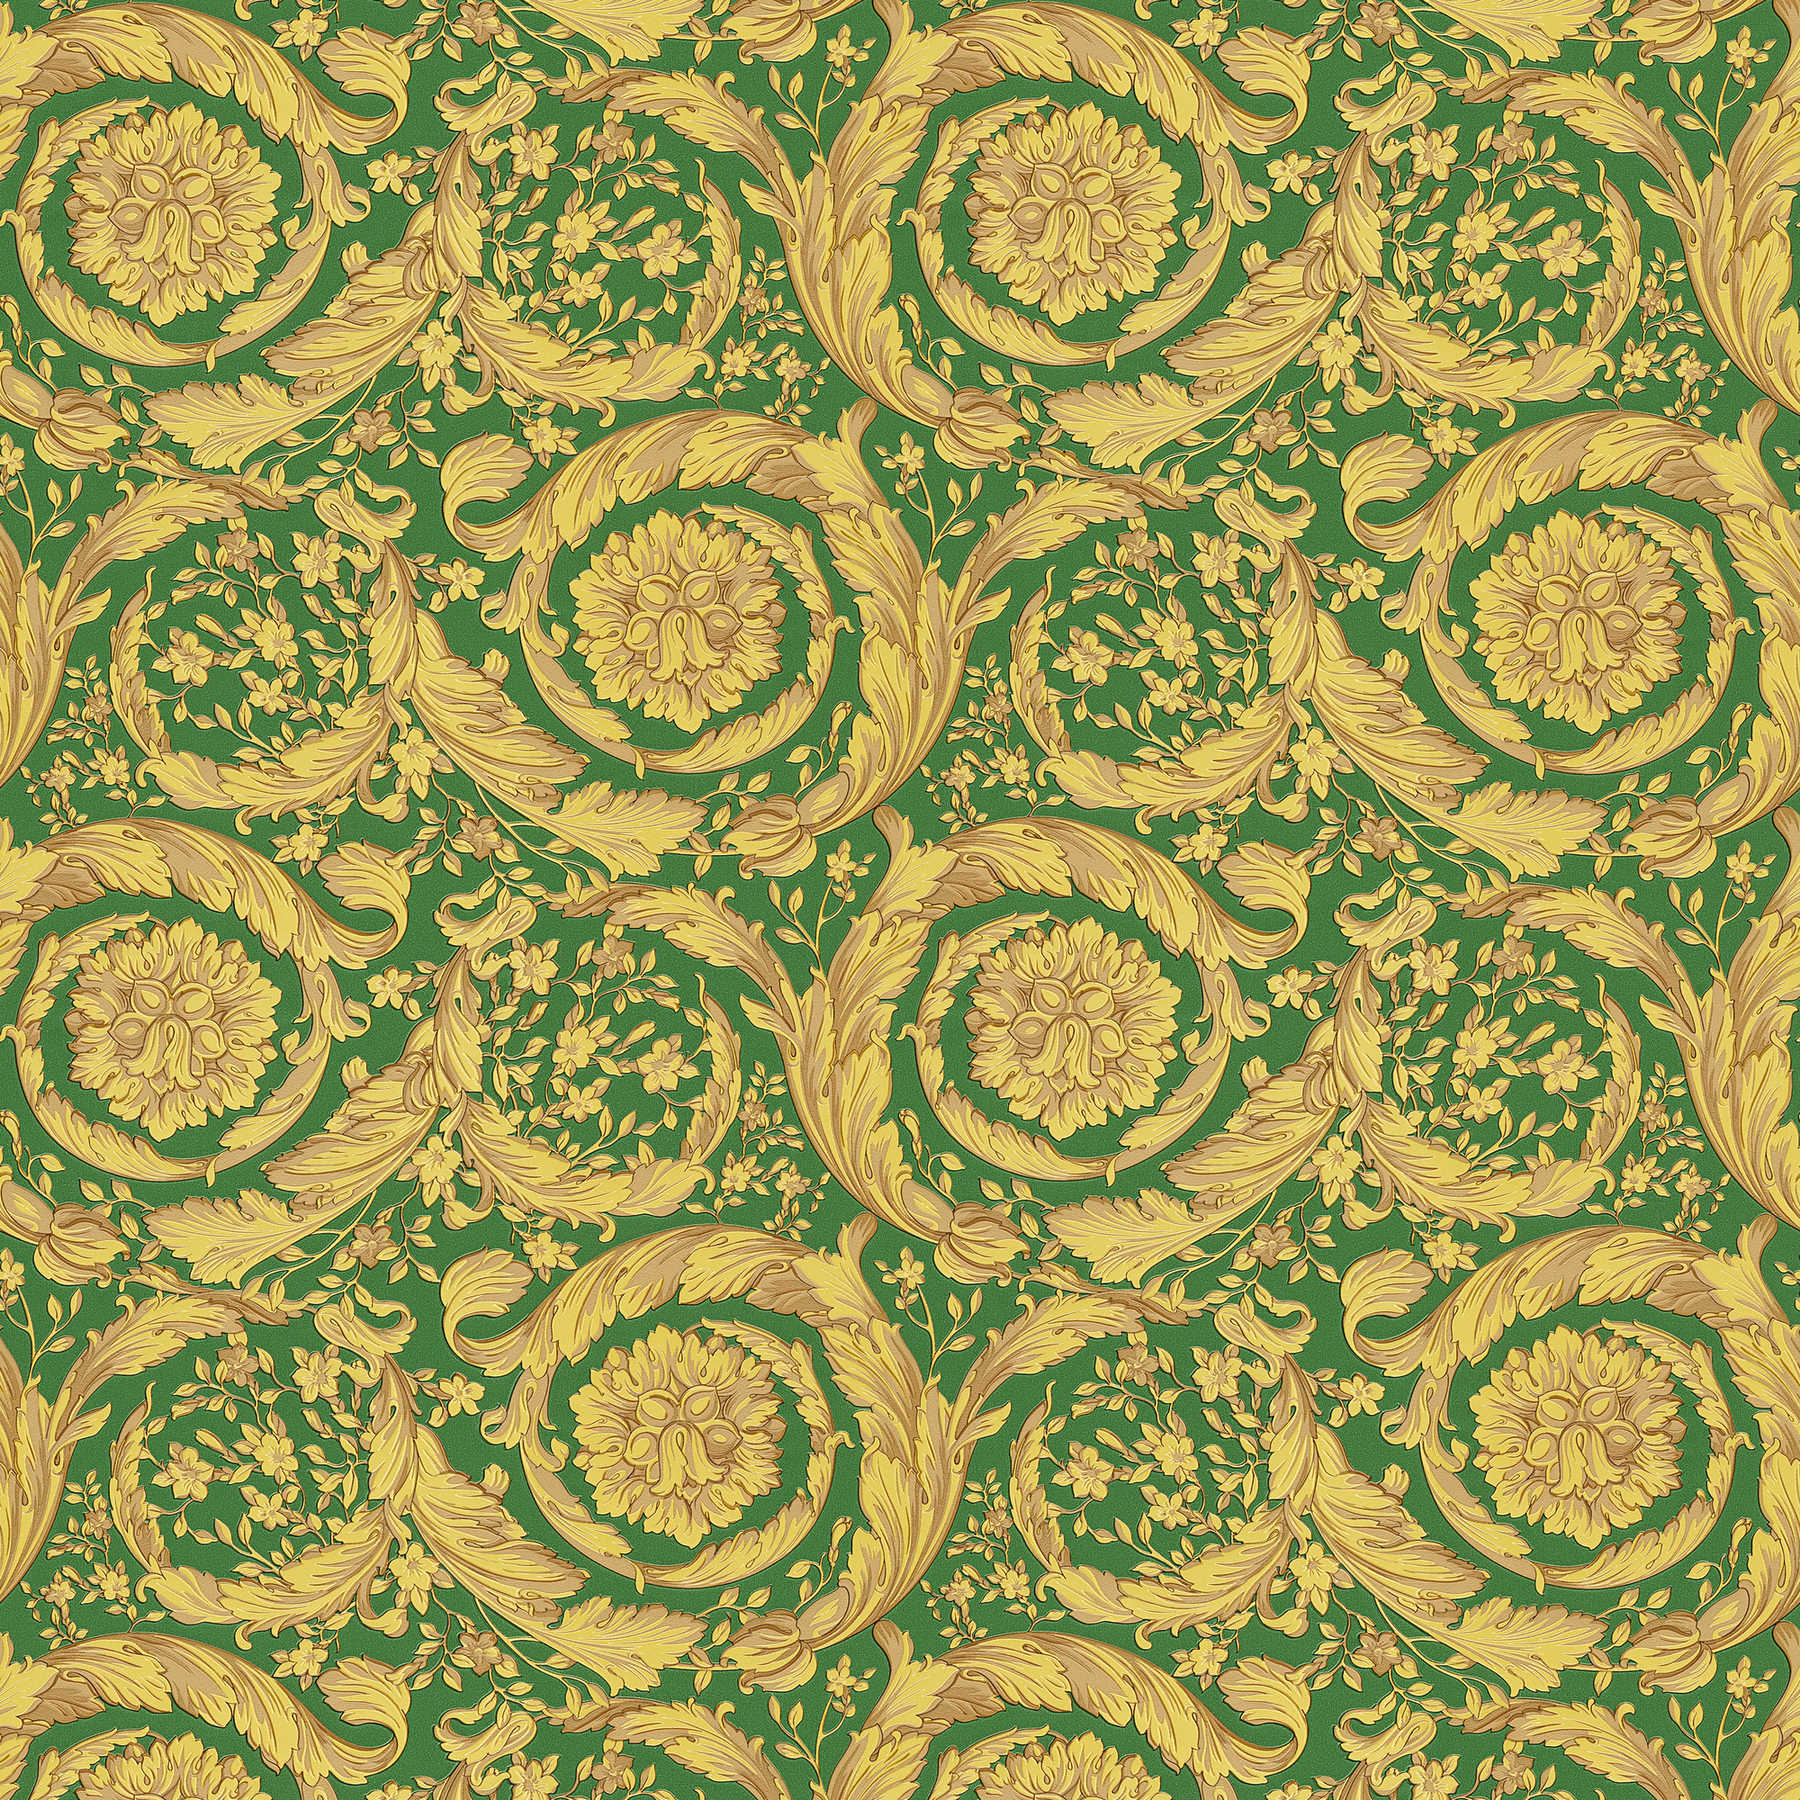 VERSACE behang ornamenteel bloemenpatroon - groen, metallic, geel
